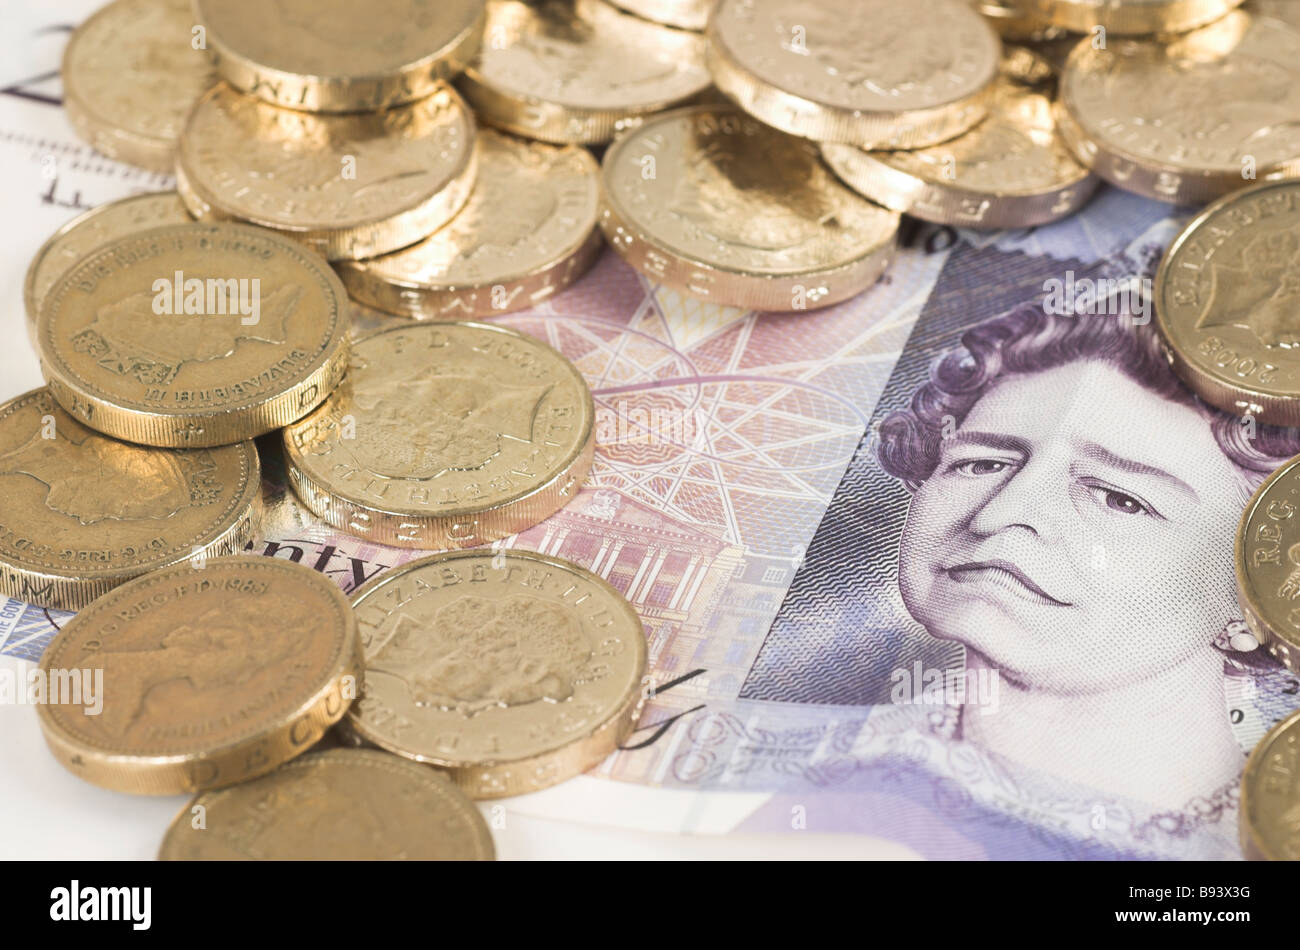 Pfund Stirling - Münzen und Banknoten Stockfoto